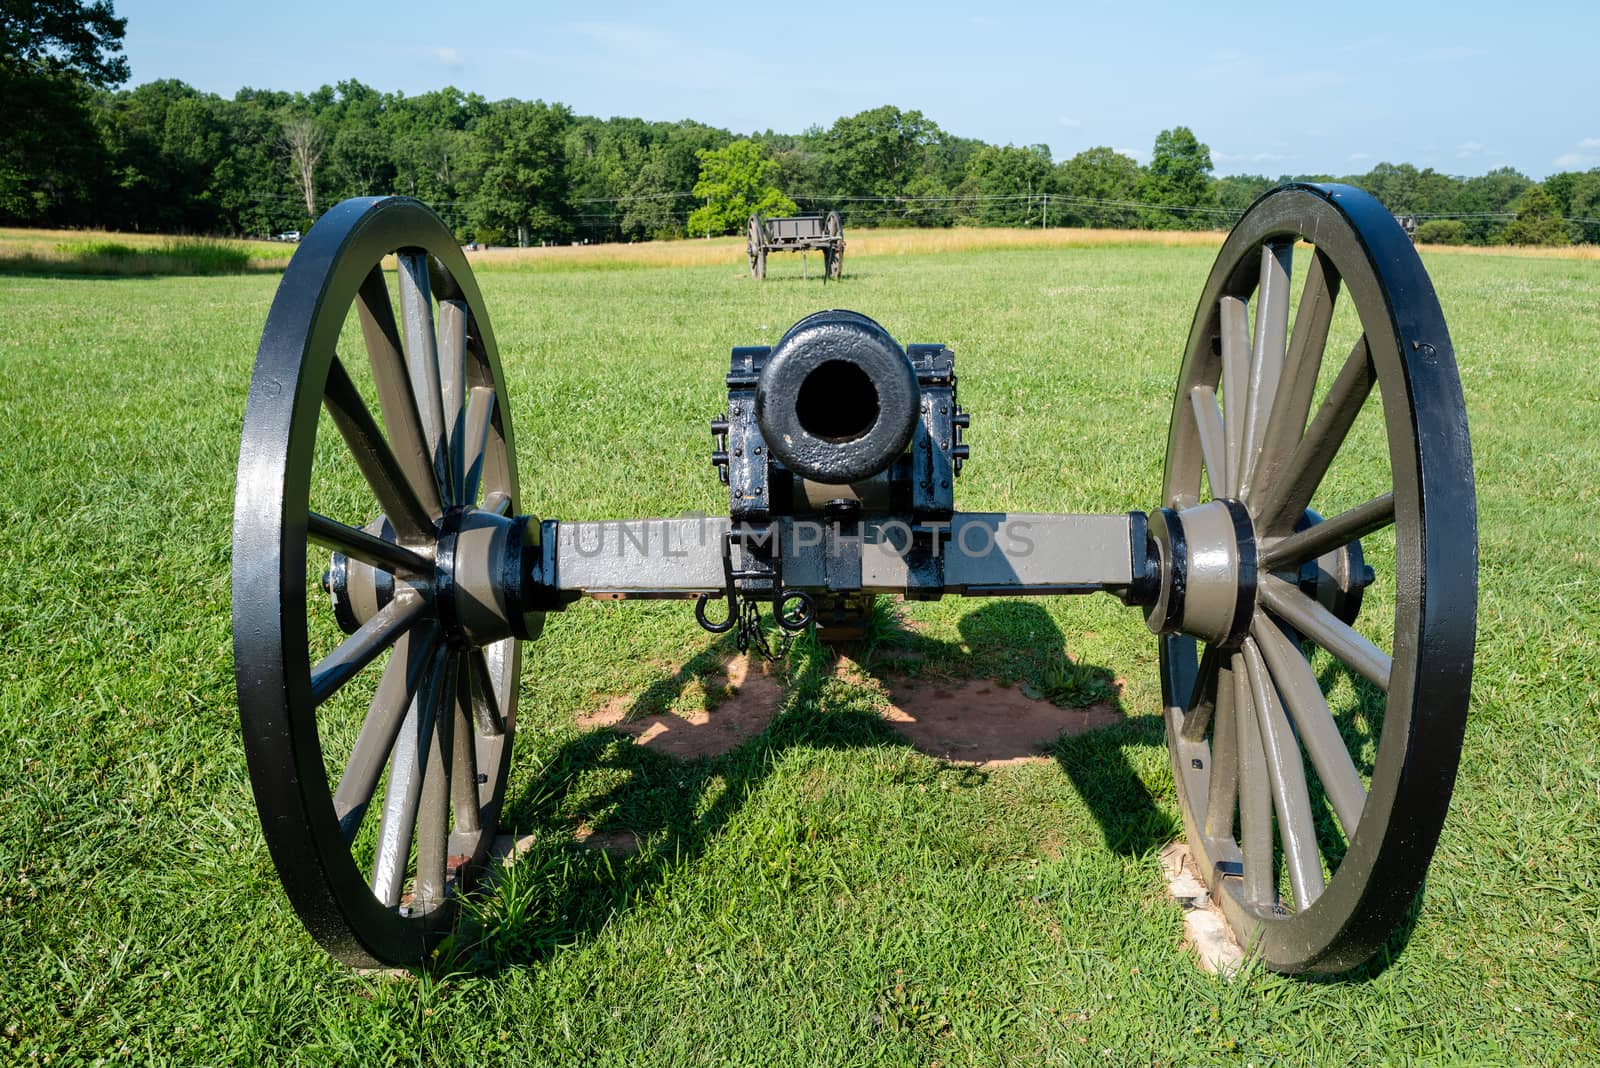 Battlefield Cannon in Manassas by jfbenning